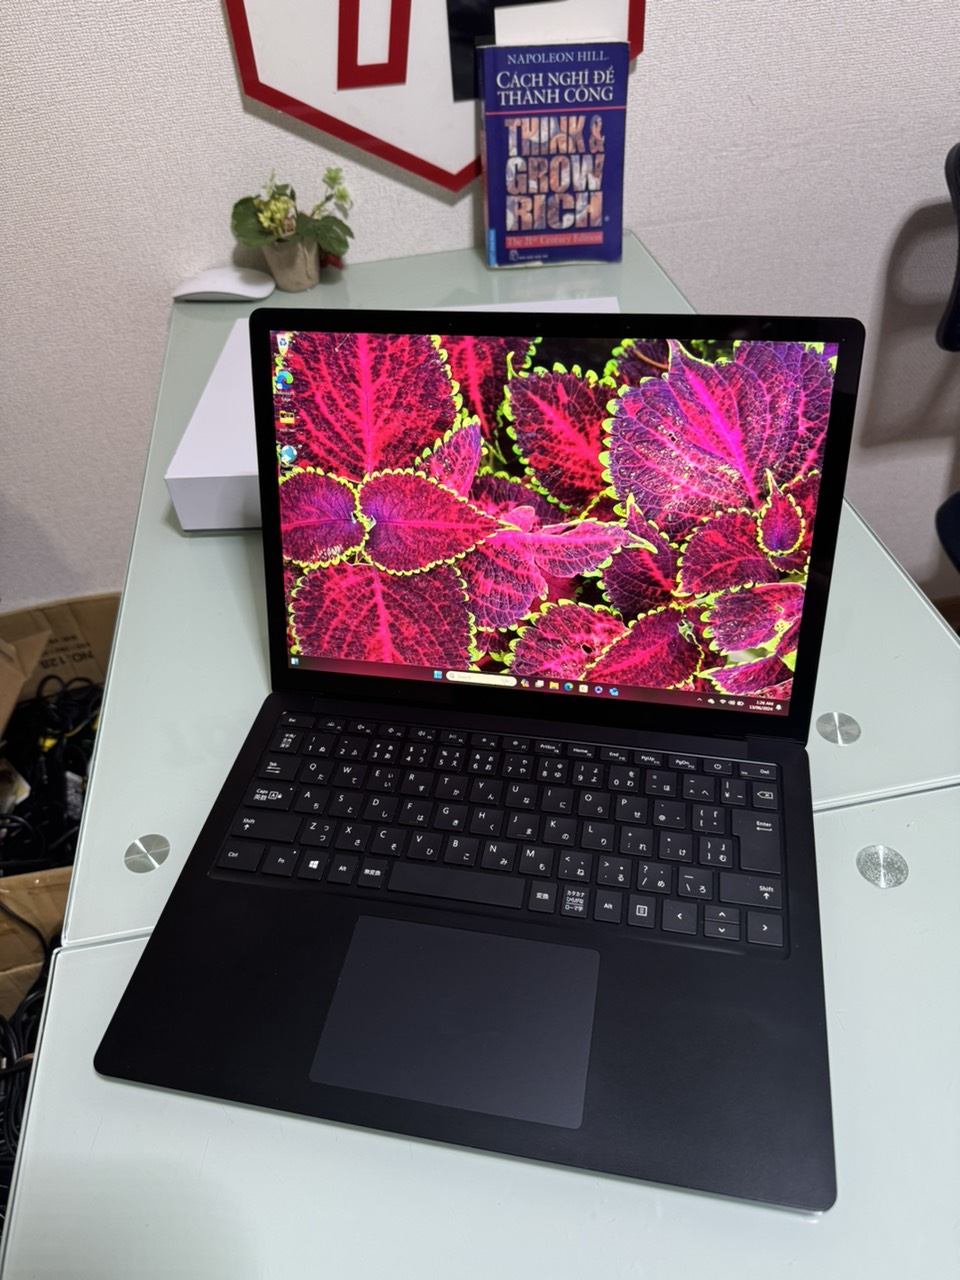 Surface Laptop 4 / Core i5-1135G7 (up to 4.20Ghz | 4 nhân 8 luồng) / RAM 8GB / SSD 256GB / 13.5 inch 2k IPS (2256x1504) cảm ứng